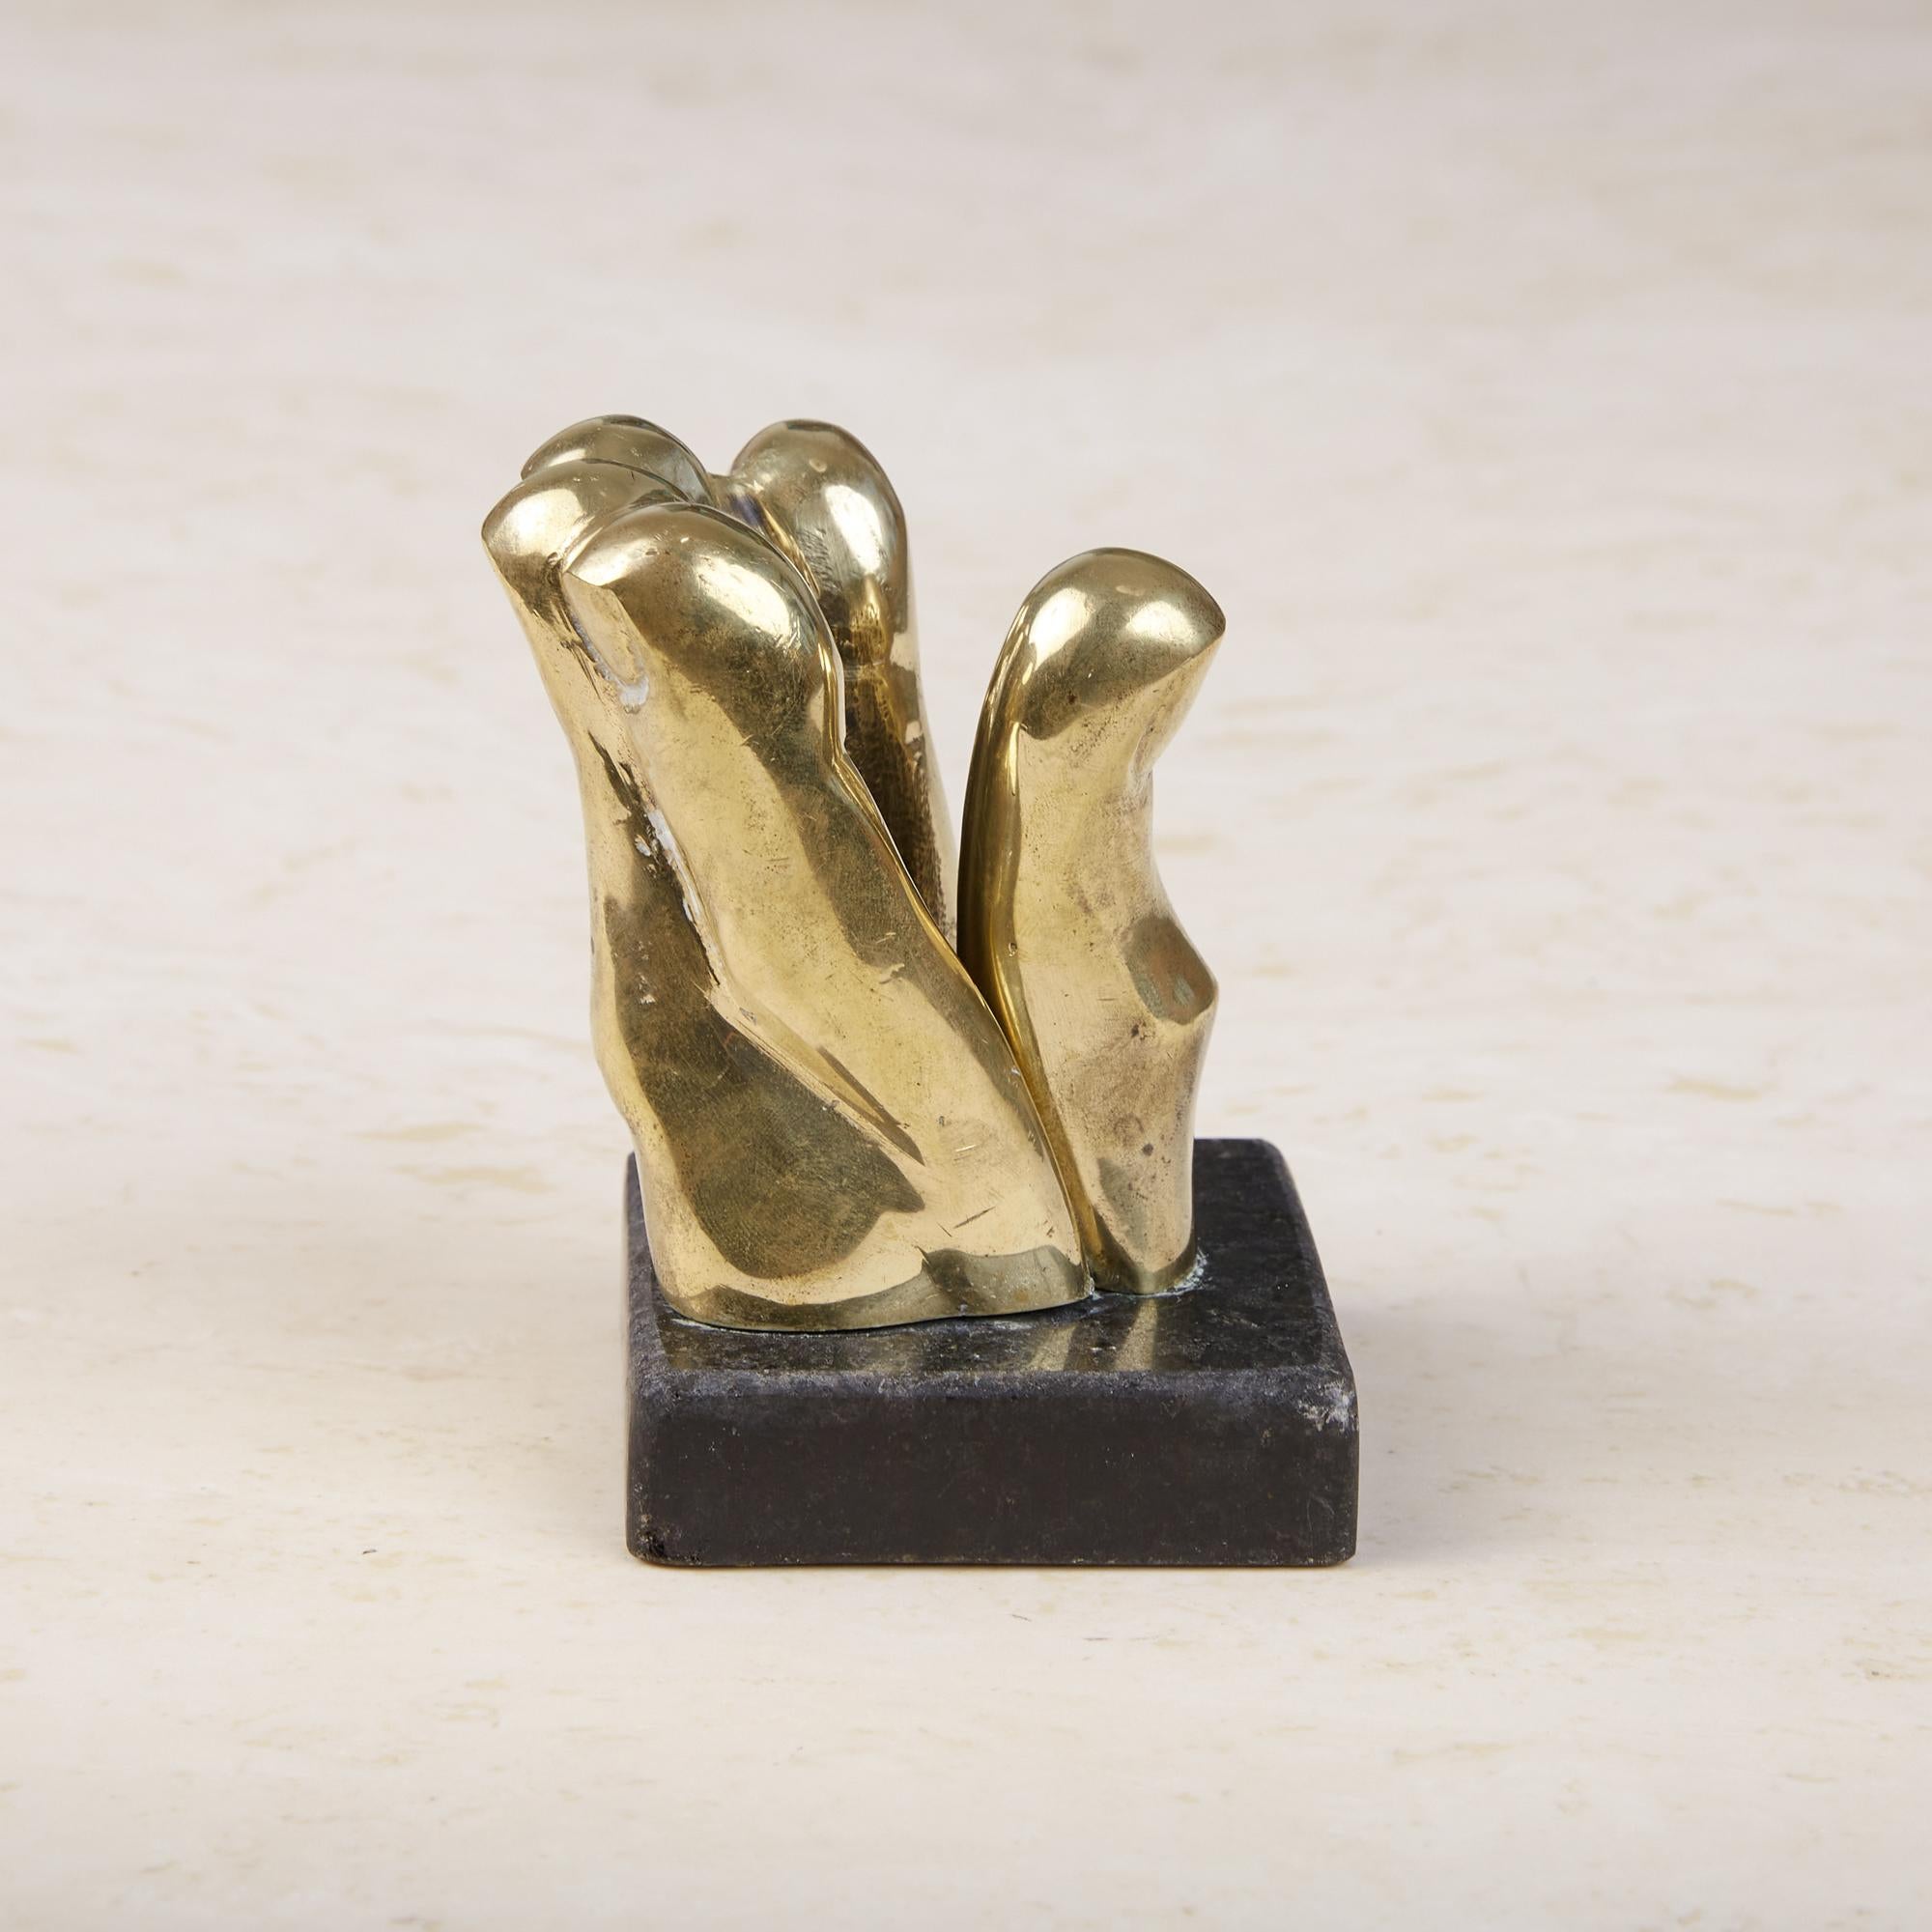 Pietrina Checcacci Cast Bronze Hand Letter Holder with Granite Base 2